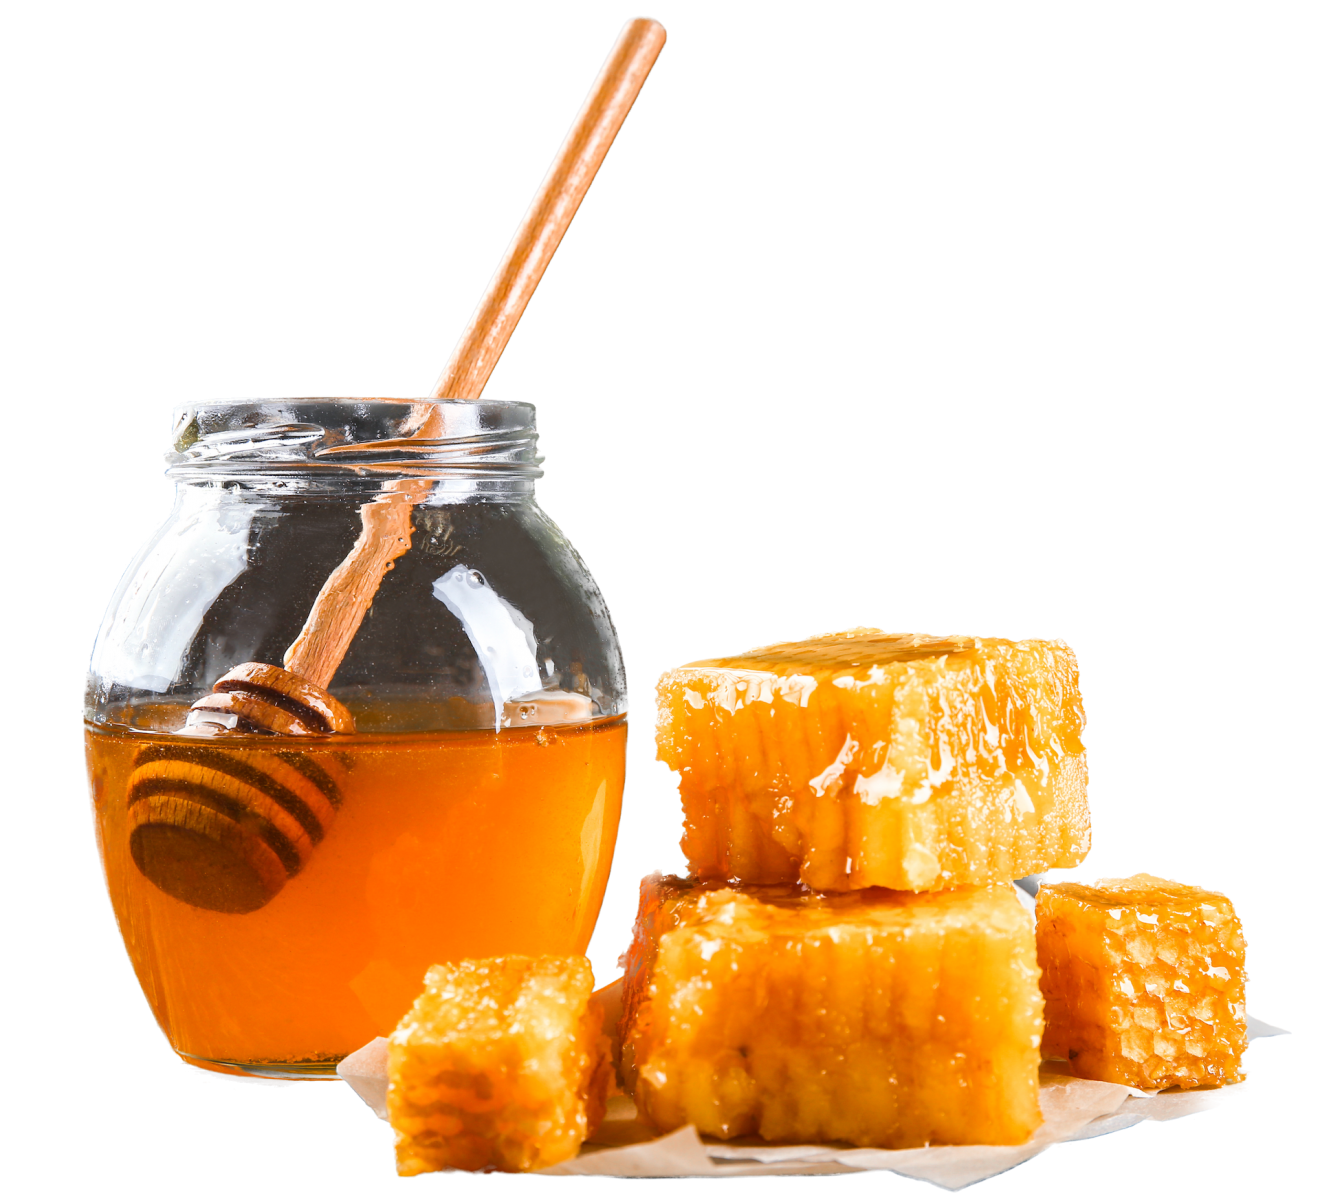 Miel aromática en tarro y panales